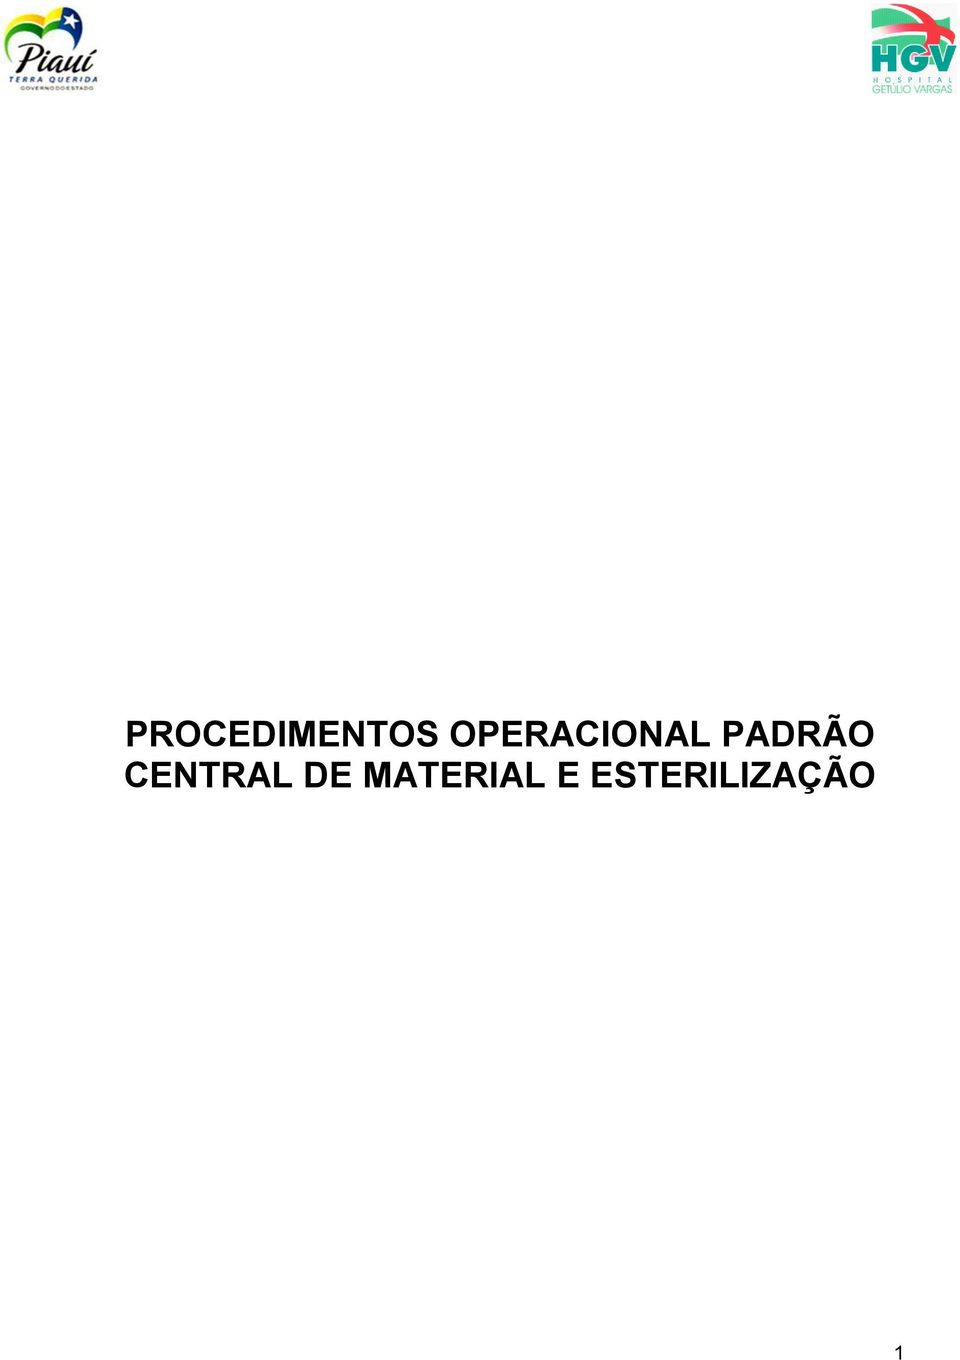 PADRÃO CENTRAL DE